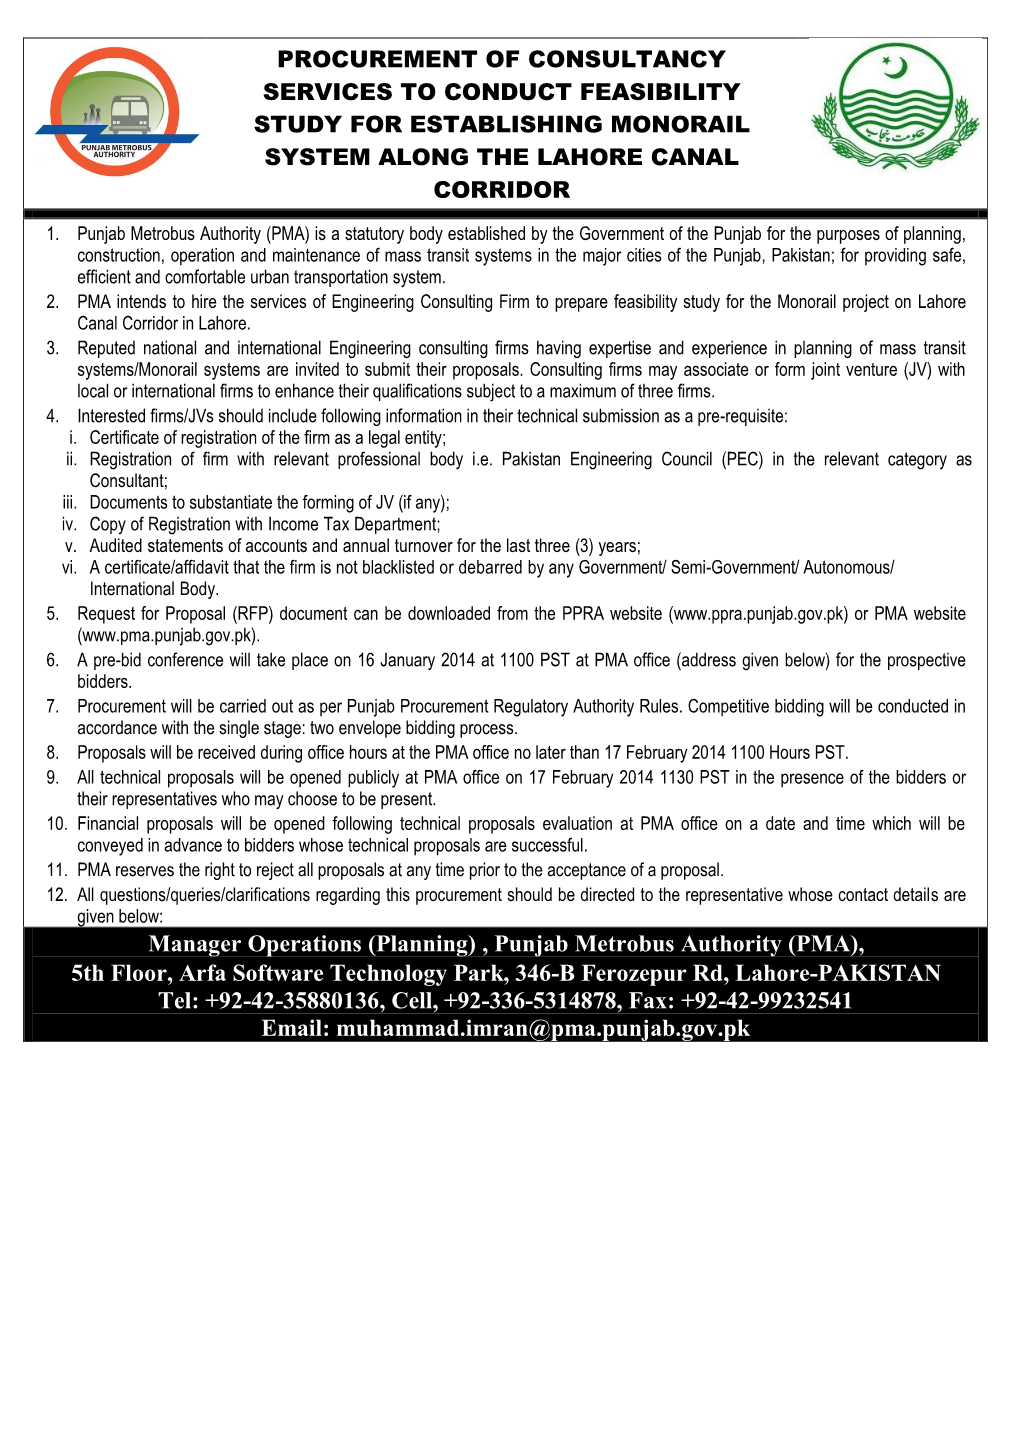 Manager Operations (Planning) , Punjab Metrobus Authority (PMA